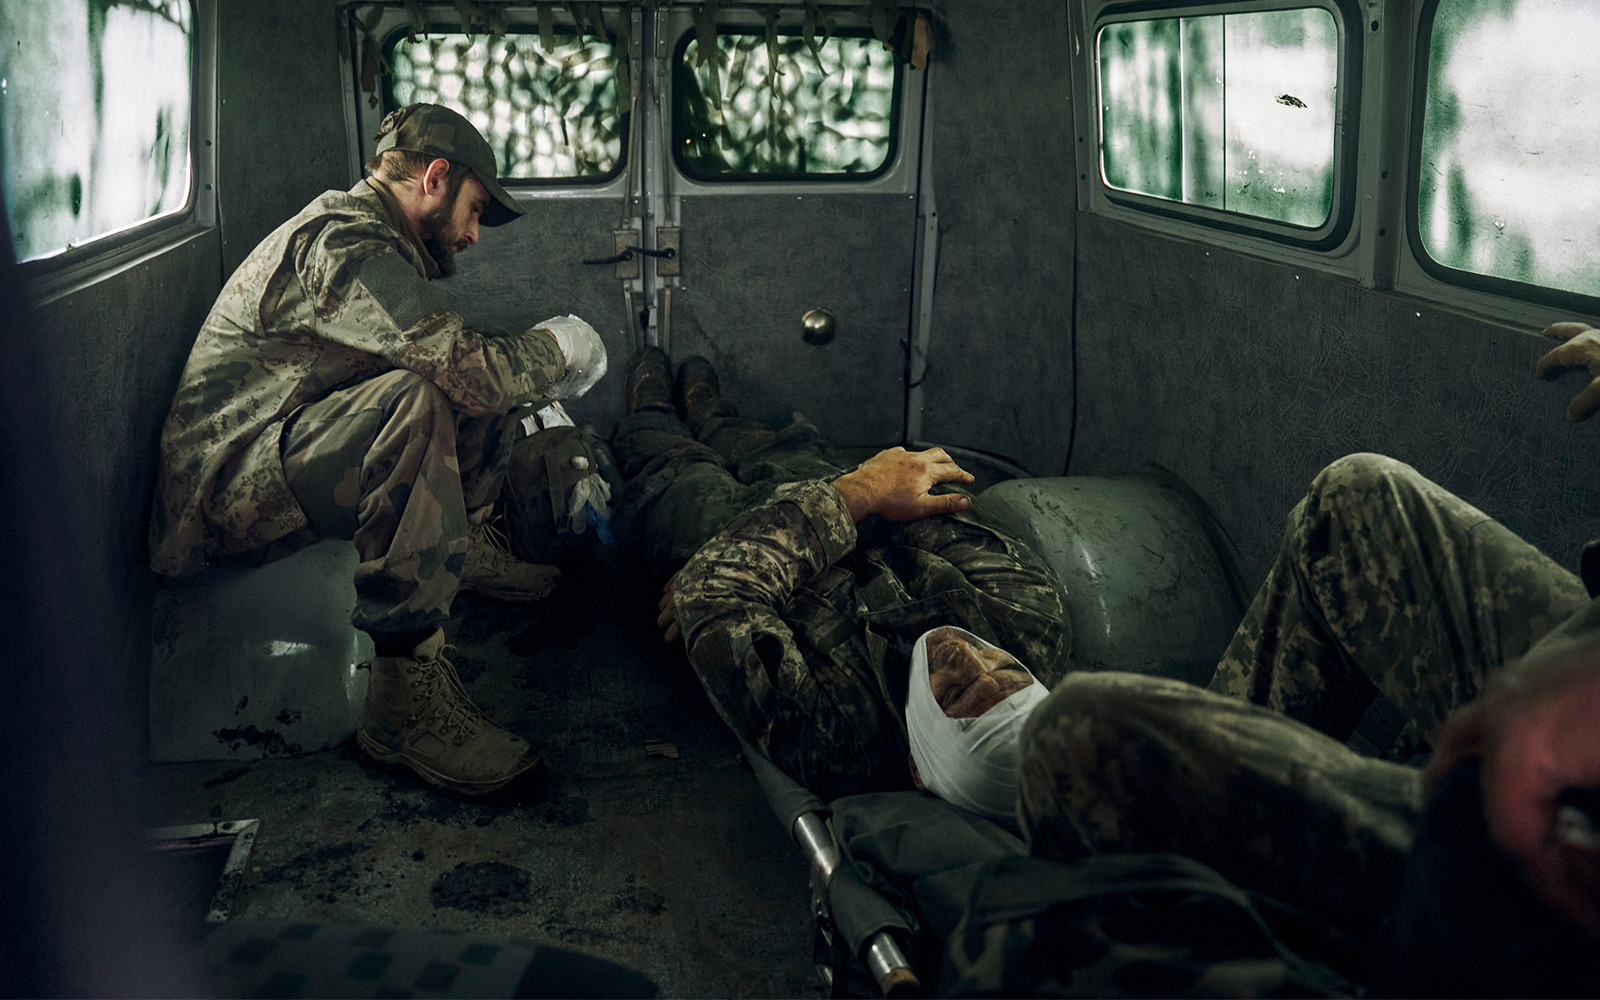 Nỗi đau sau cuộc chiến: Các cựu binh Ukraine phải dùng cần sa để điều trị chấn thương chiến tranh - Ảnh 1.